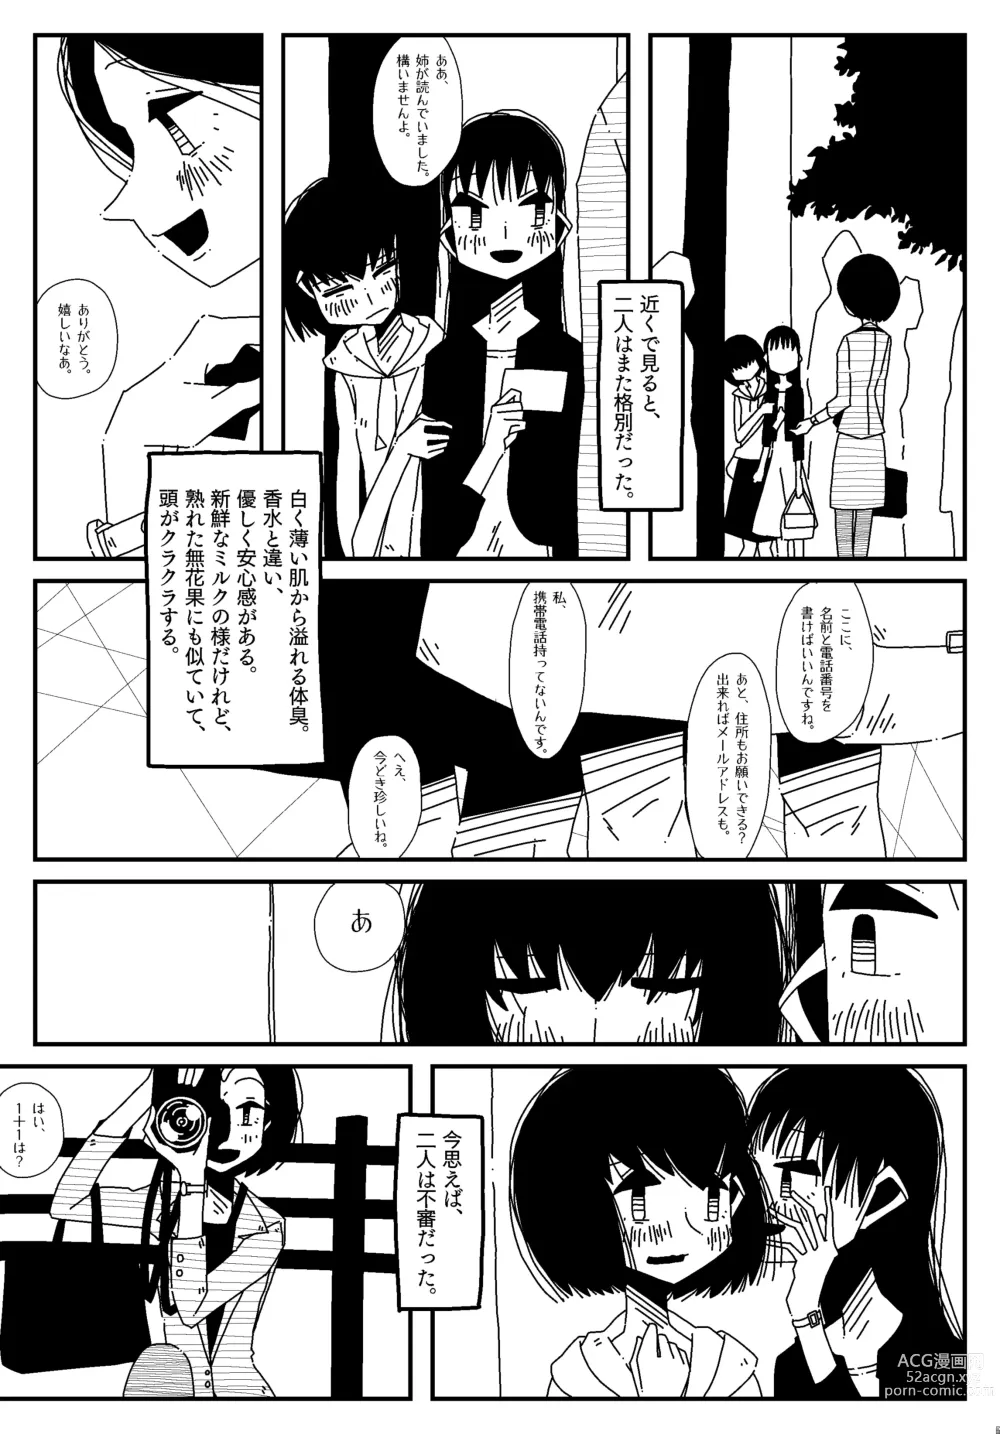 Page 3 of doujinshi Shiranai Sukaato no Naka.